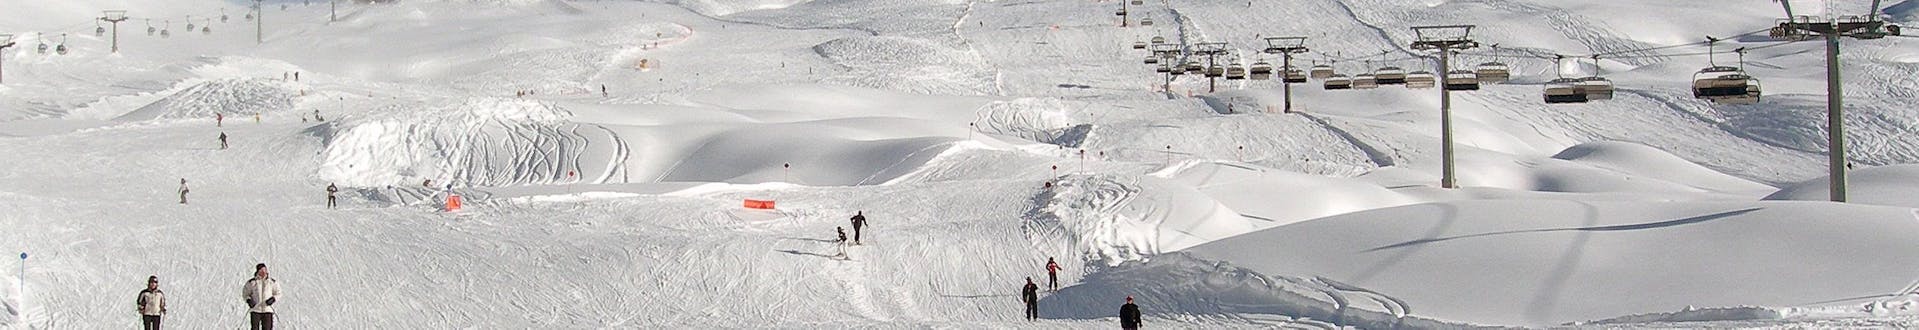 Uitzicht op de pistes van Folgarida, waar je skilessen kunt boeken.